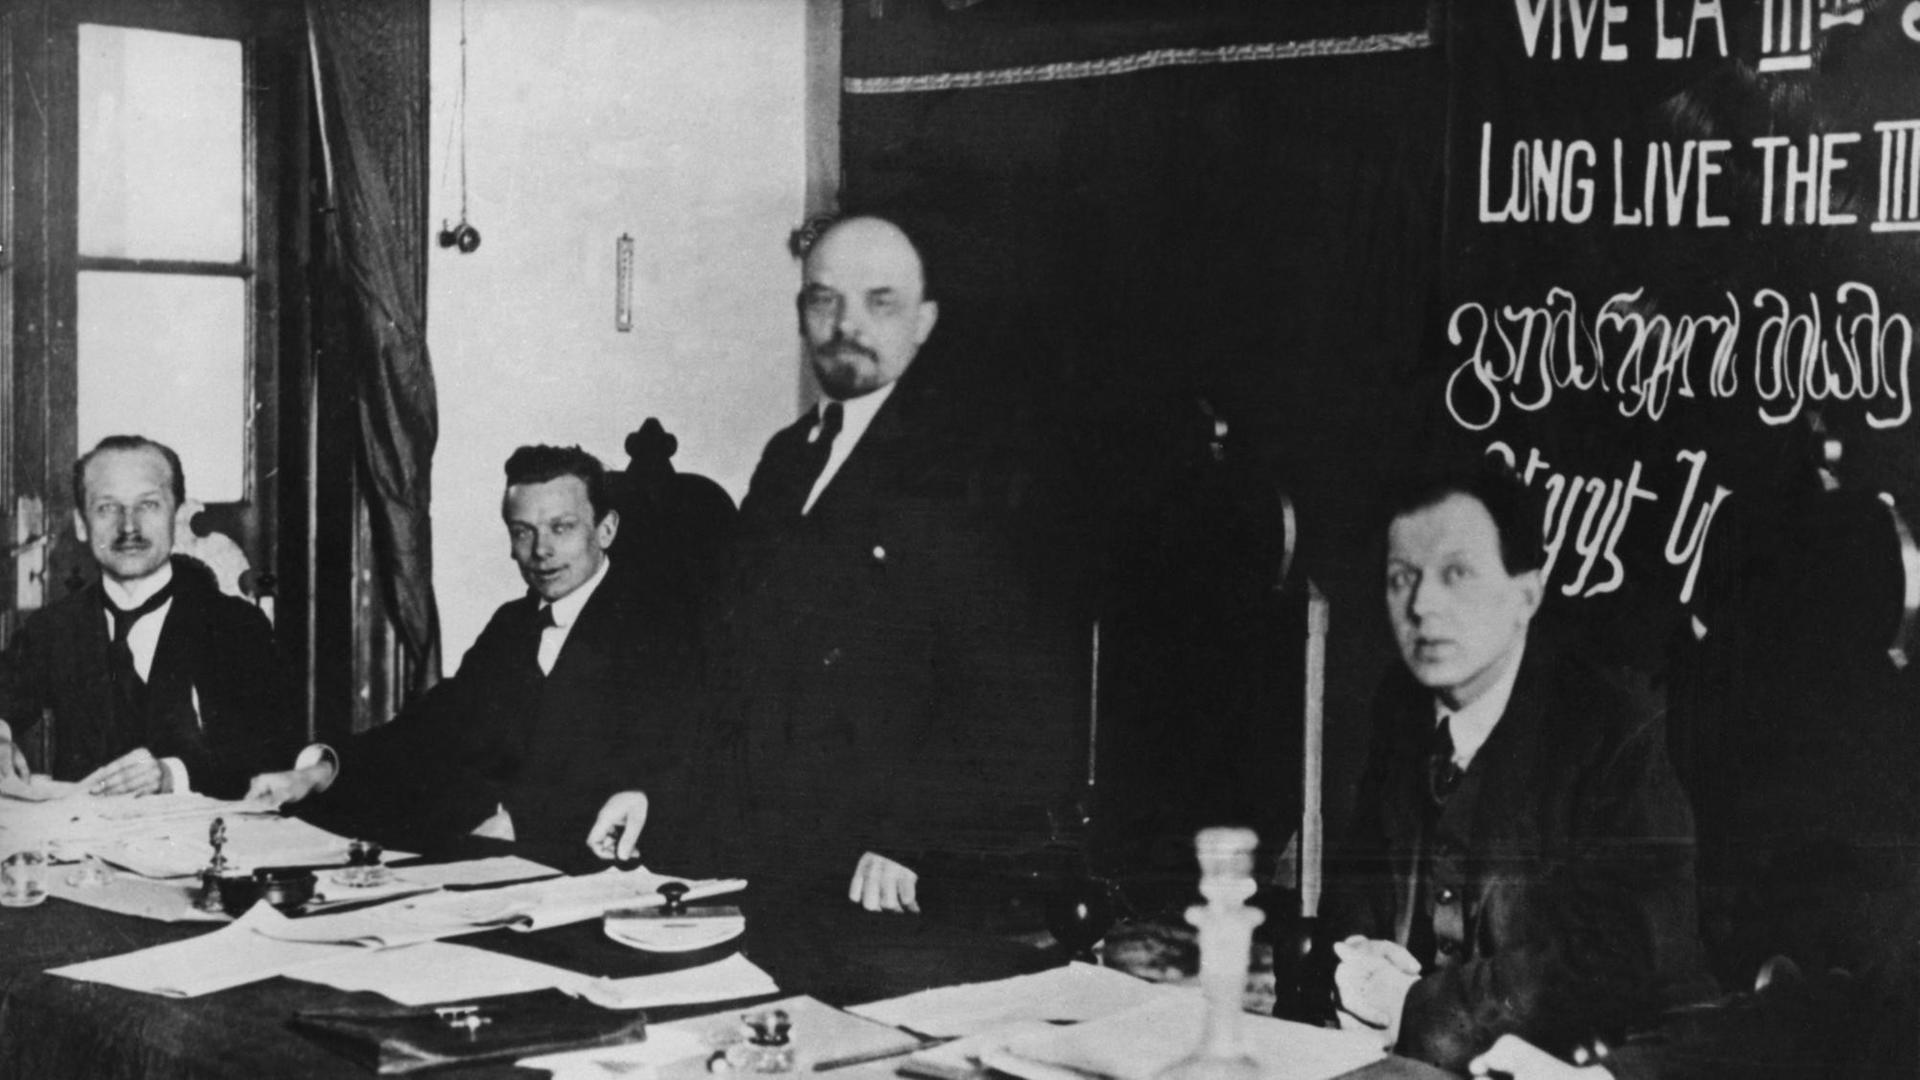 Das Präsidium des Gründungskongresses der Kommunistischen Internationale in Moskau, März 1919: von links Gustav Klinger, Hugo Eberlein, Wladimir Iljitsch Lenin, Fritz Platten.